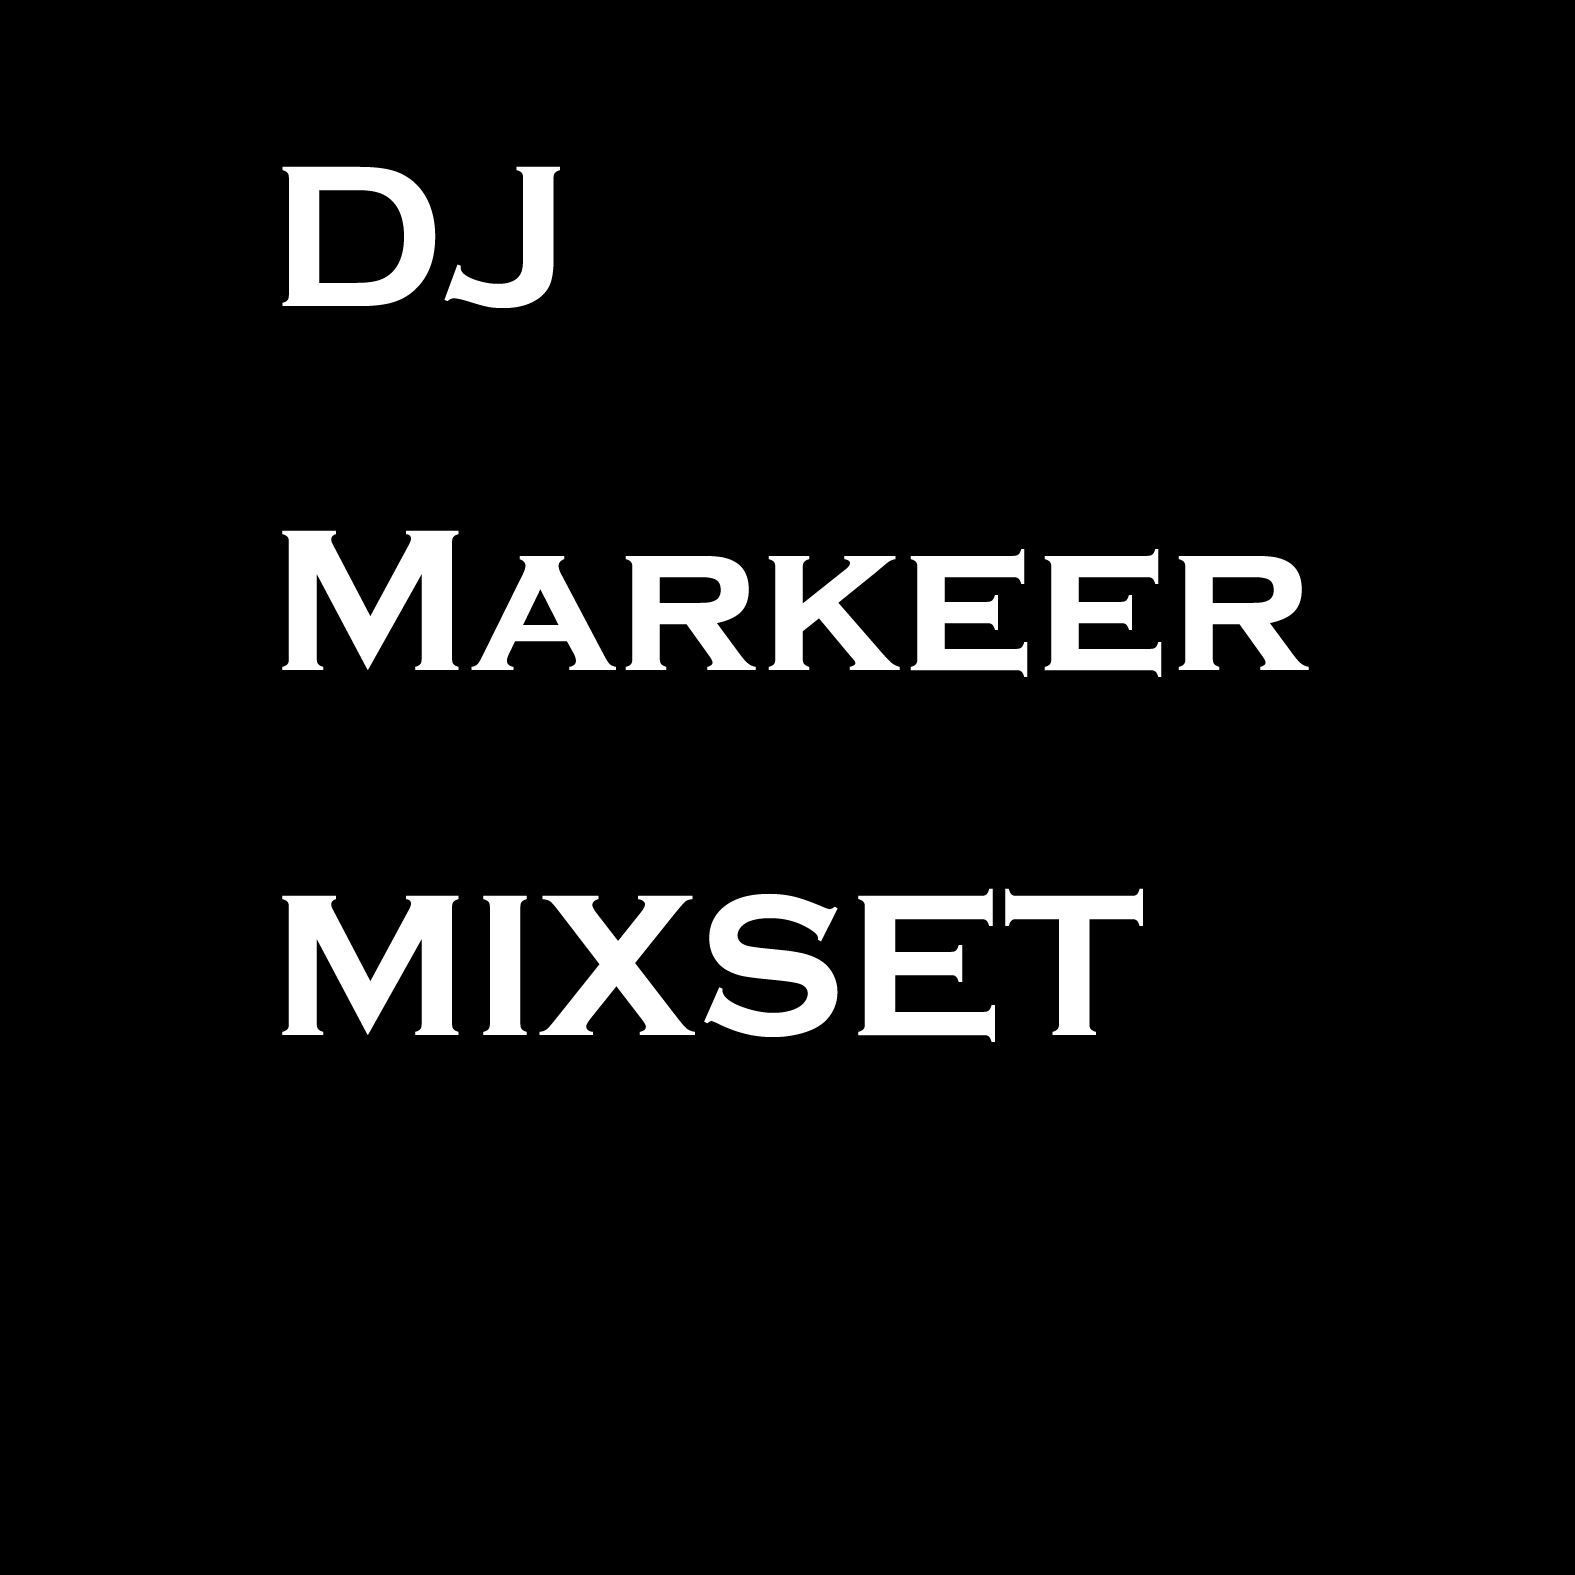 DJMARKEER MIXSET.png : ◆◆◆◆◆◆[무료] 불타는 믹셋!! 버닝믹스 DJ Markeer Mixset Vol.39 Burnig Mix ◆◆◆◆◆◆